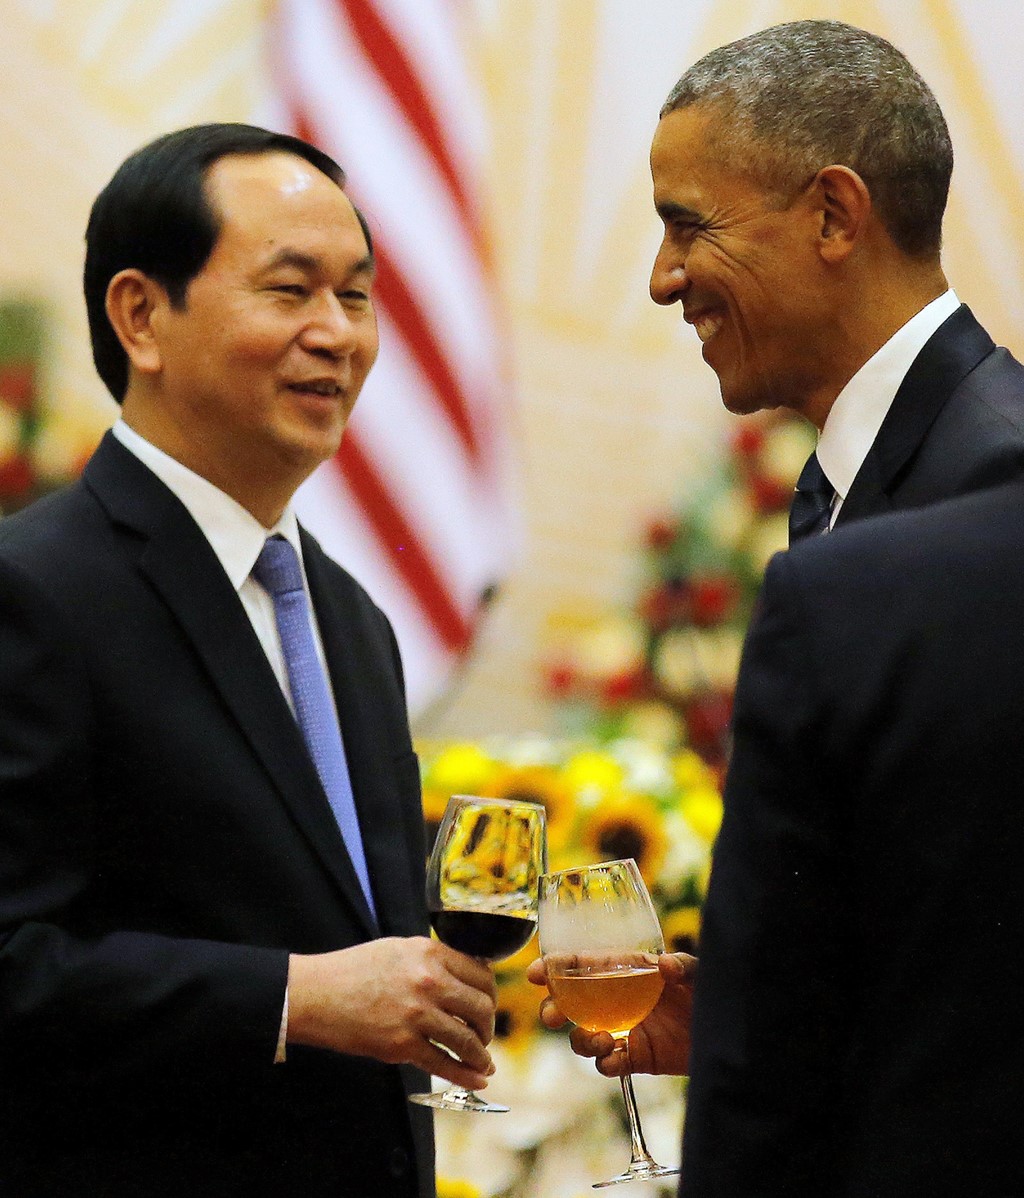  Sau đó, Tổng thống Obama dự tiệc chiêu đãi cùng với Chủ tịch nước Trần Đại Quang. Ảnh: Reuters